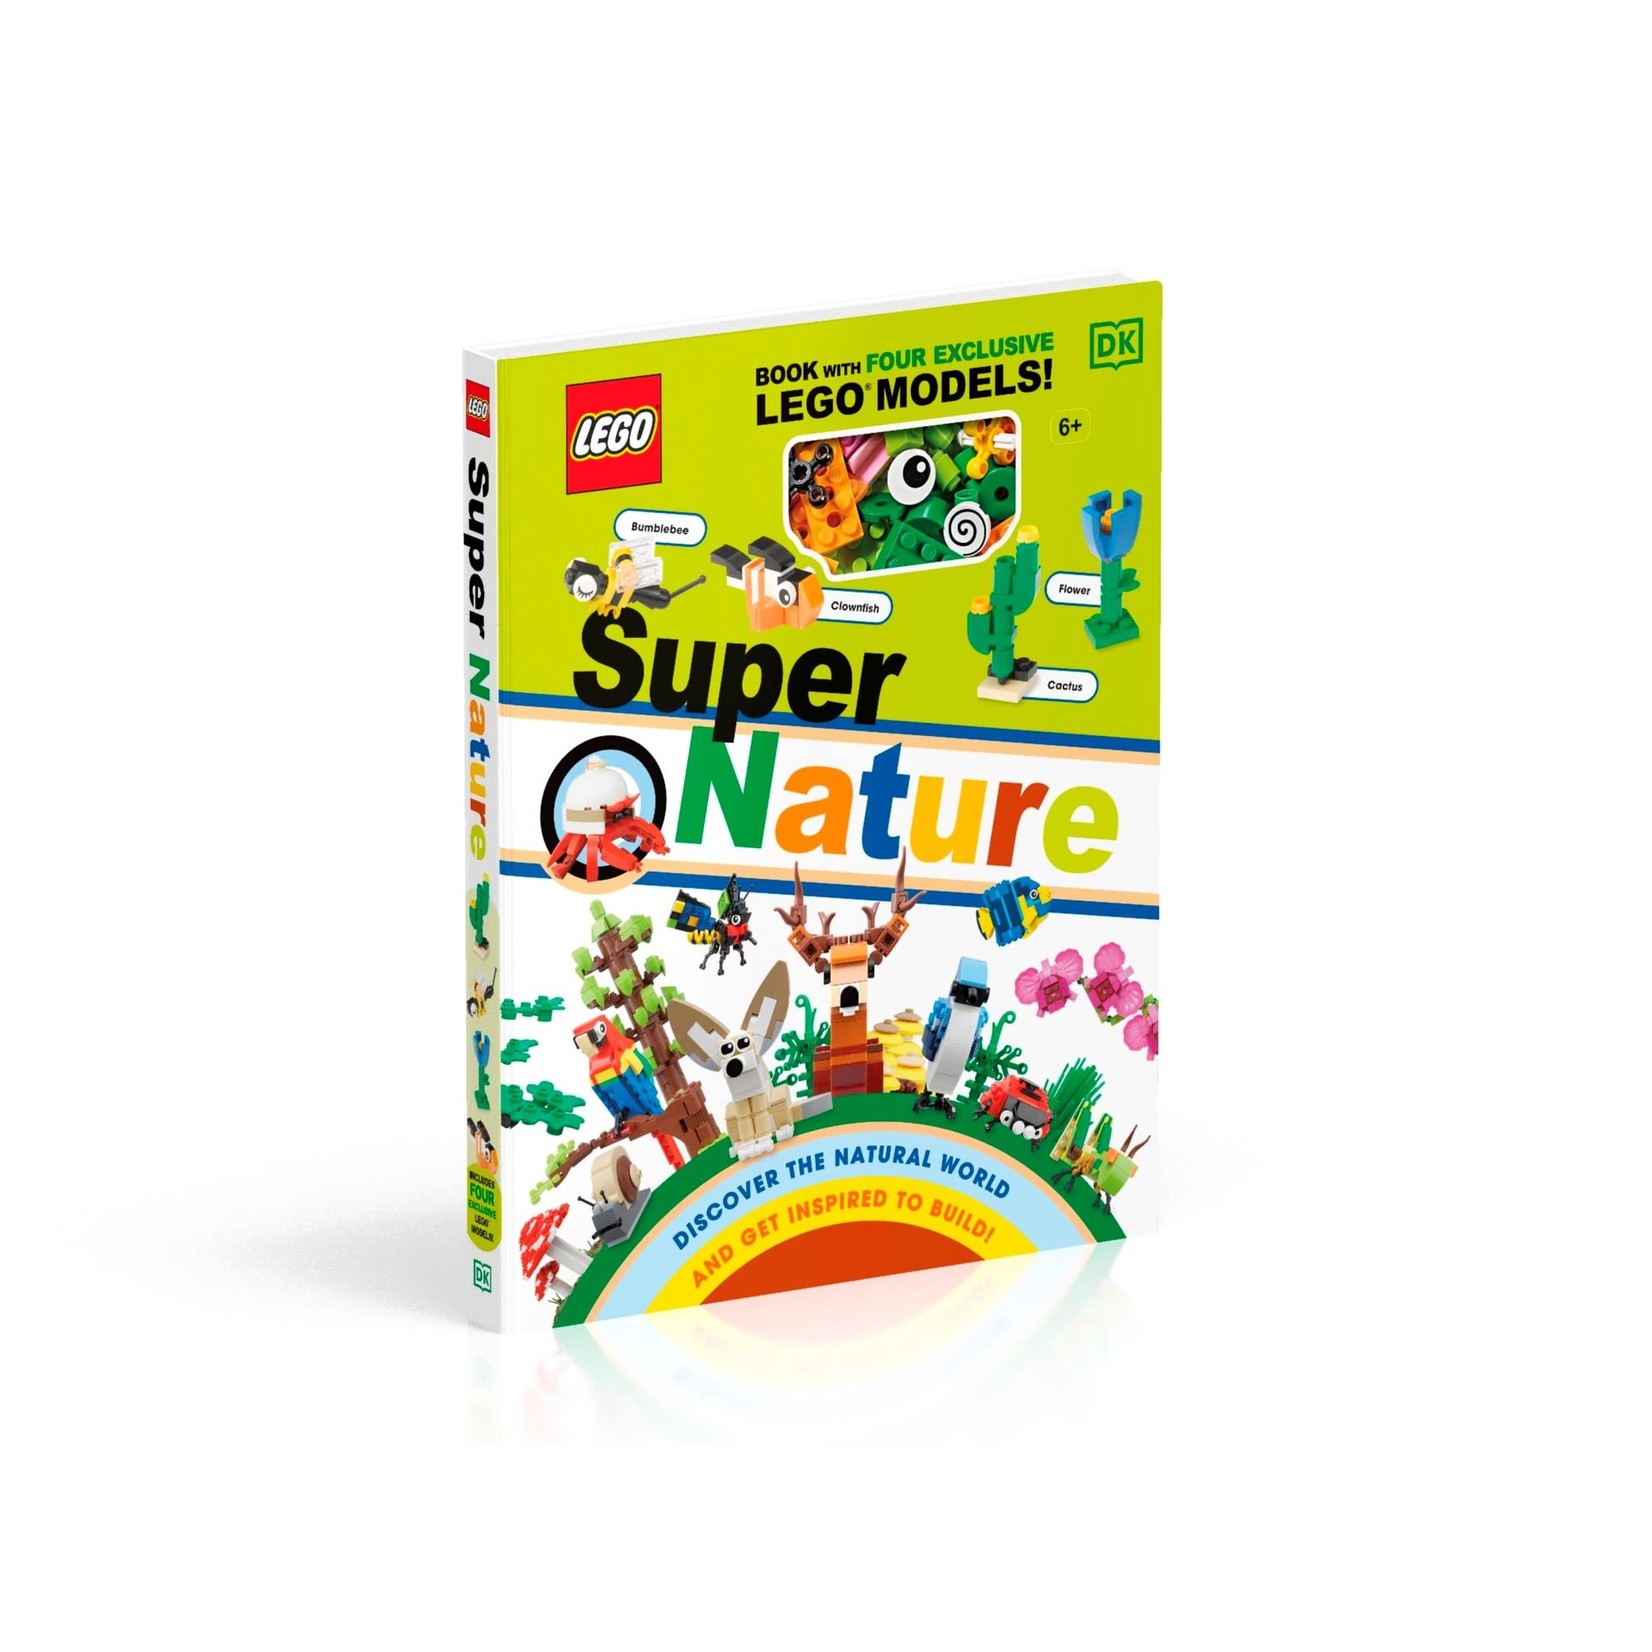 LEGO Supernatuur - 5006851